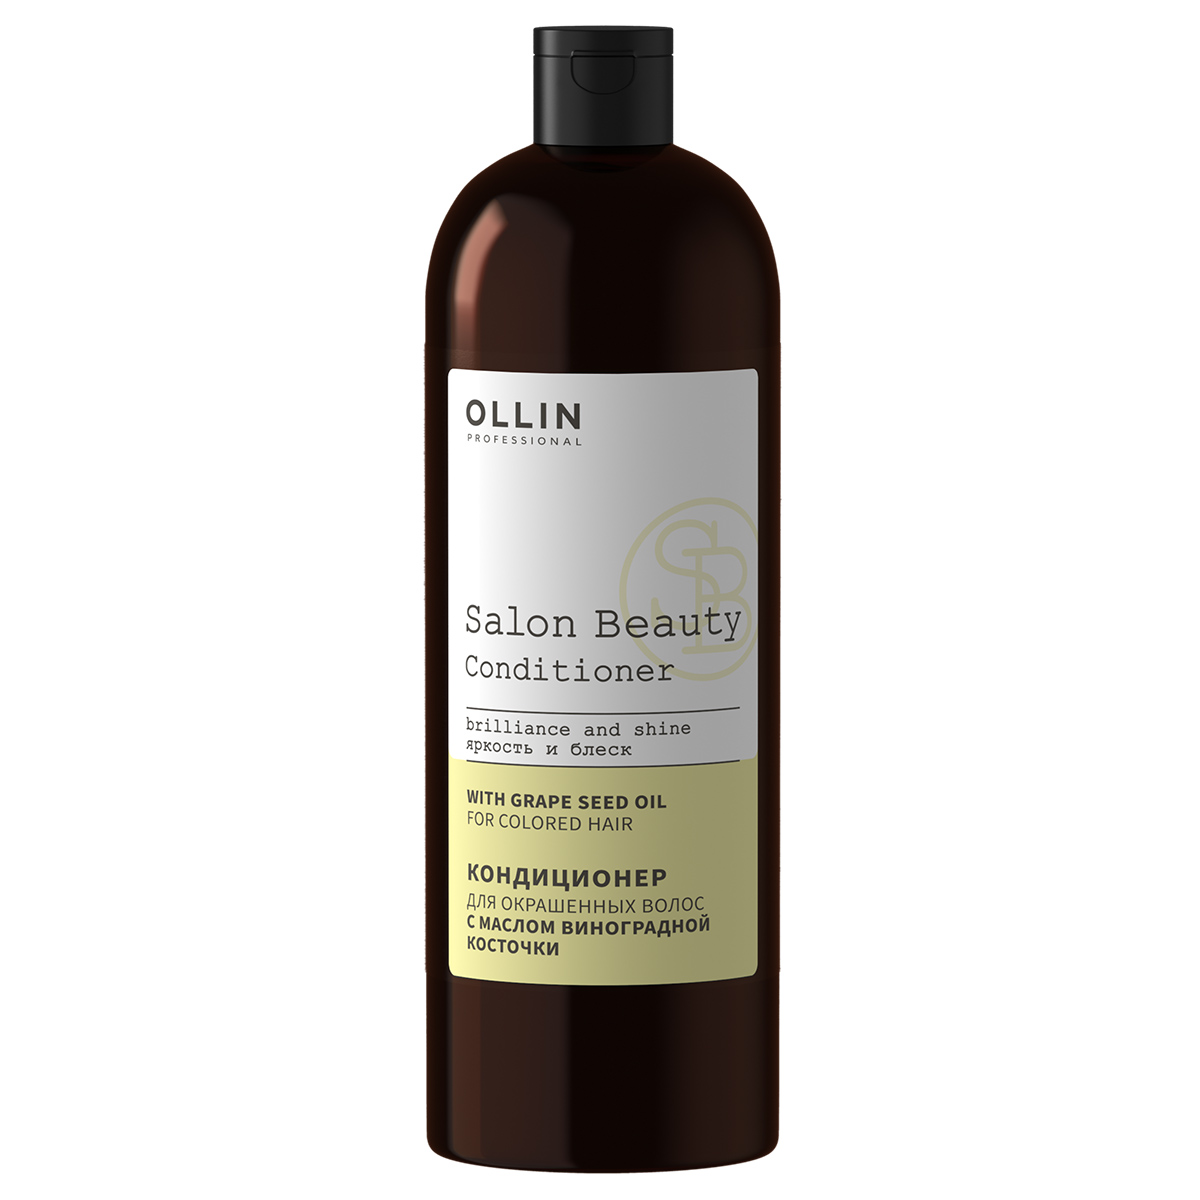 SALON BEAUTY Кондиционер для окрашенных волос с маслом виноградной косточки, 1000мл, OLLIN